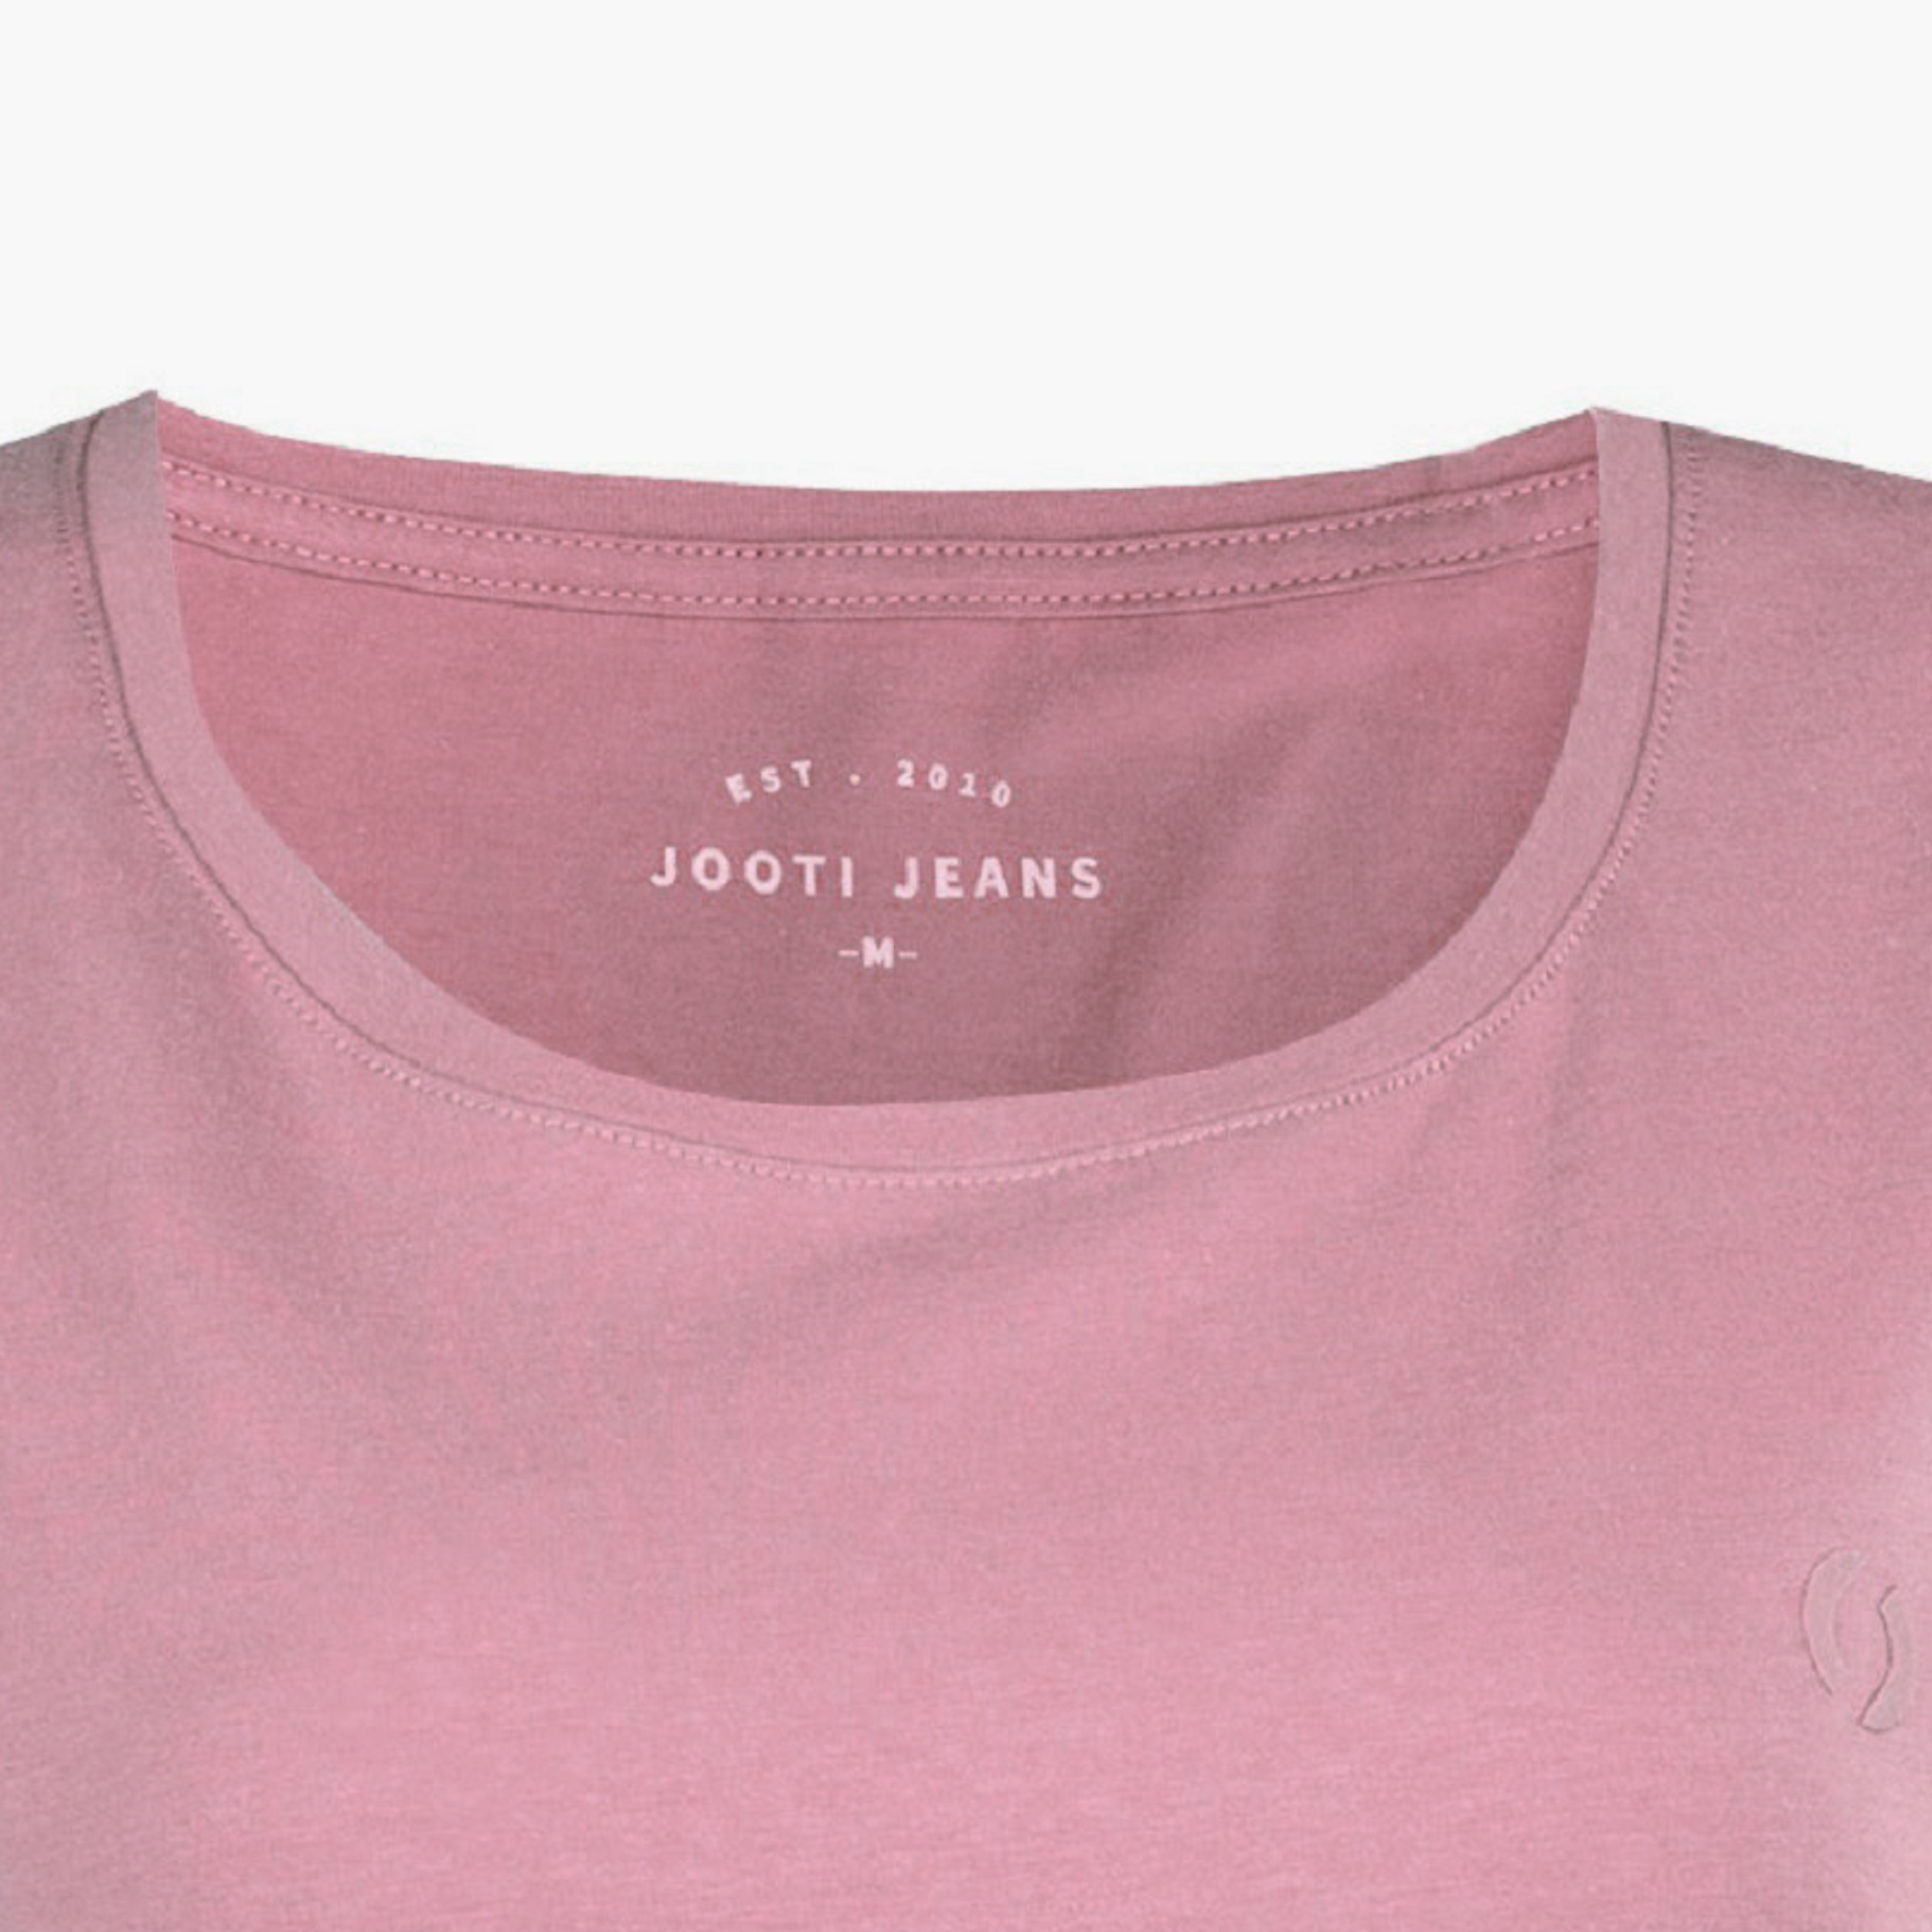 تی شرت آستین کوتاه زنانه جوتی جینز مدل بیسیک کد 1551408 رنگ کالباسی روشن